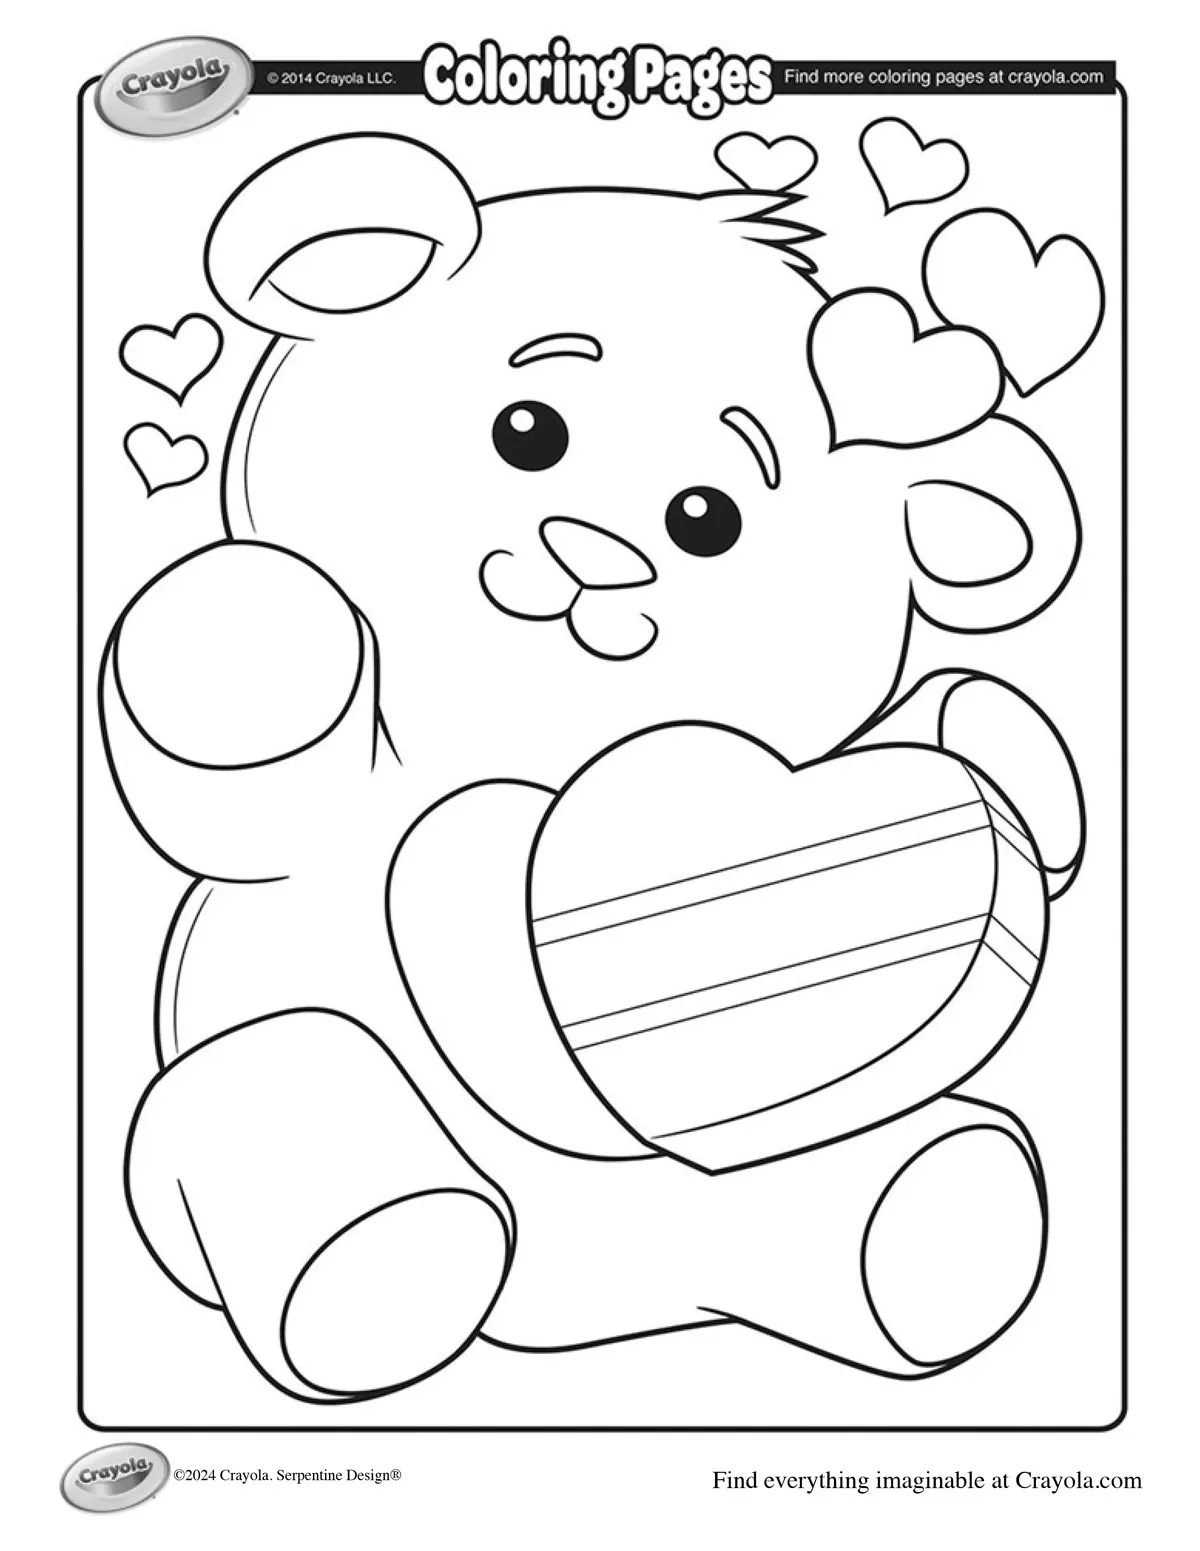 Valentine's-Teddy-Bear-Coloring-Page-_-crayola.com